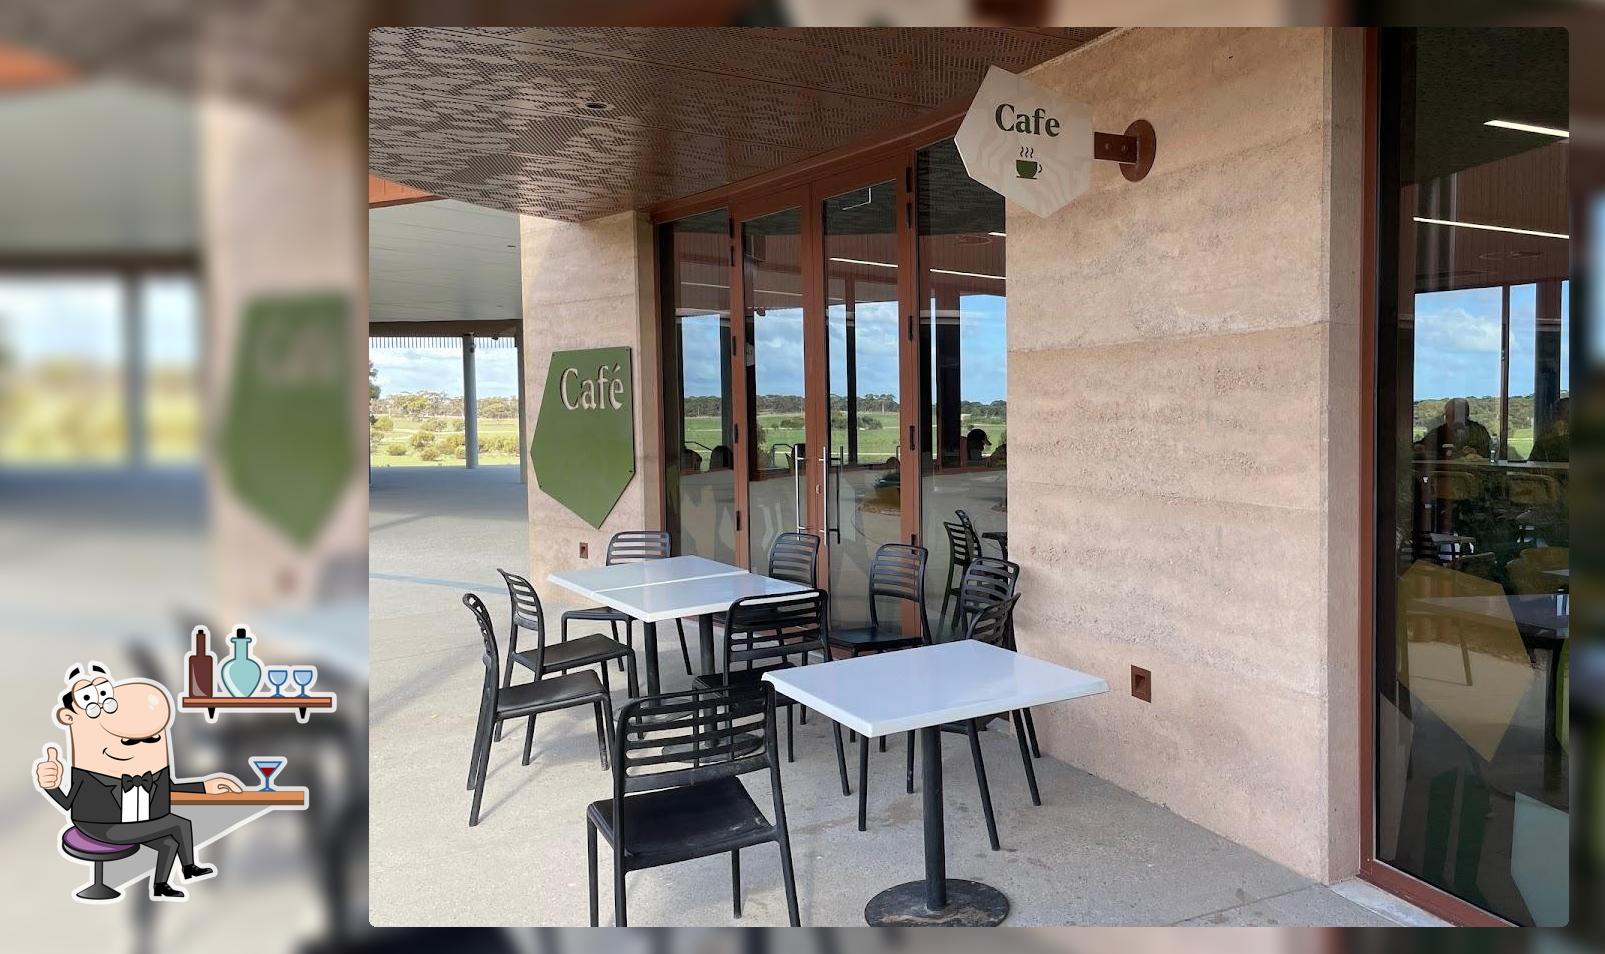 Check out how Monarto Safari Park Café looks inside